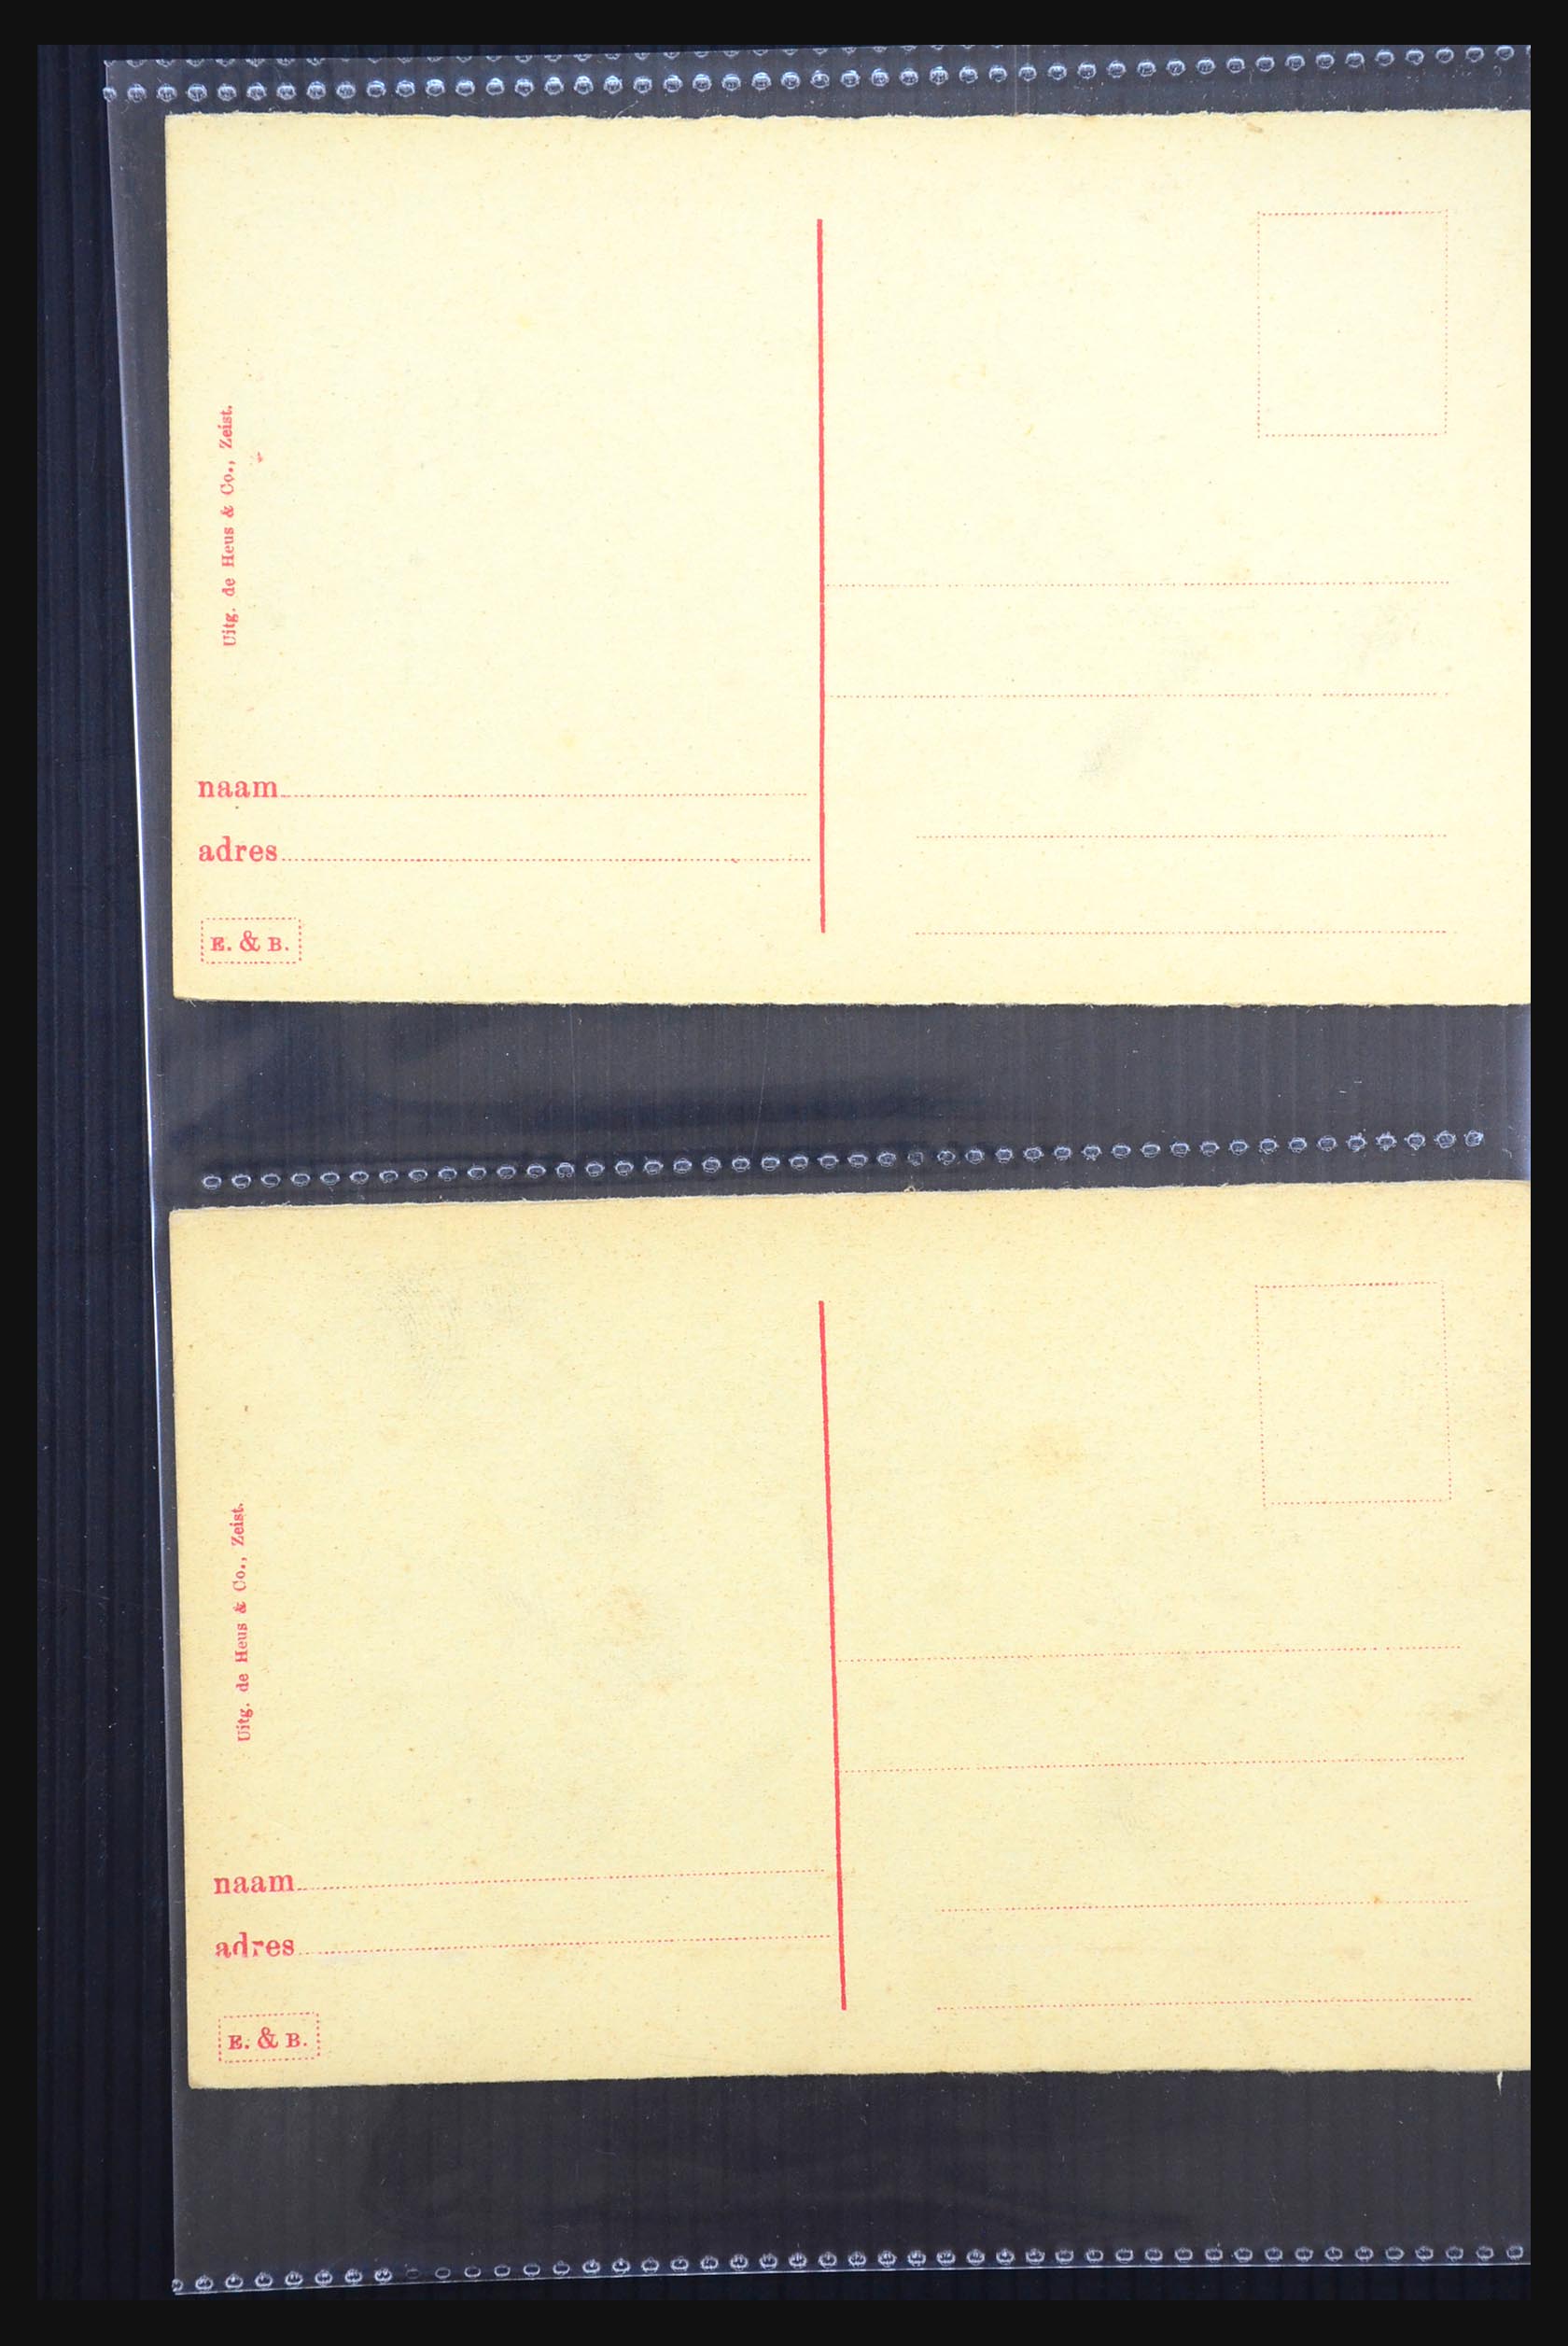 31338 072 - 31338 Nederland ansichtkaarten 1897-1914.